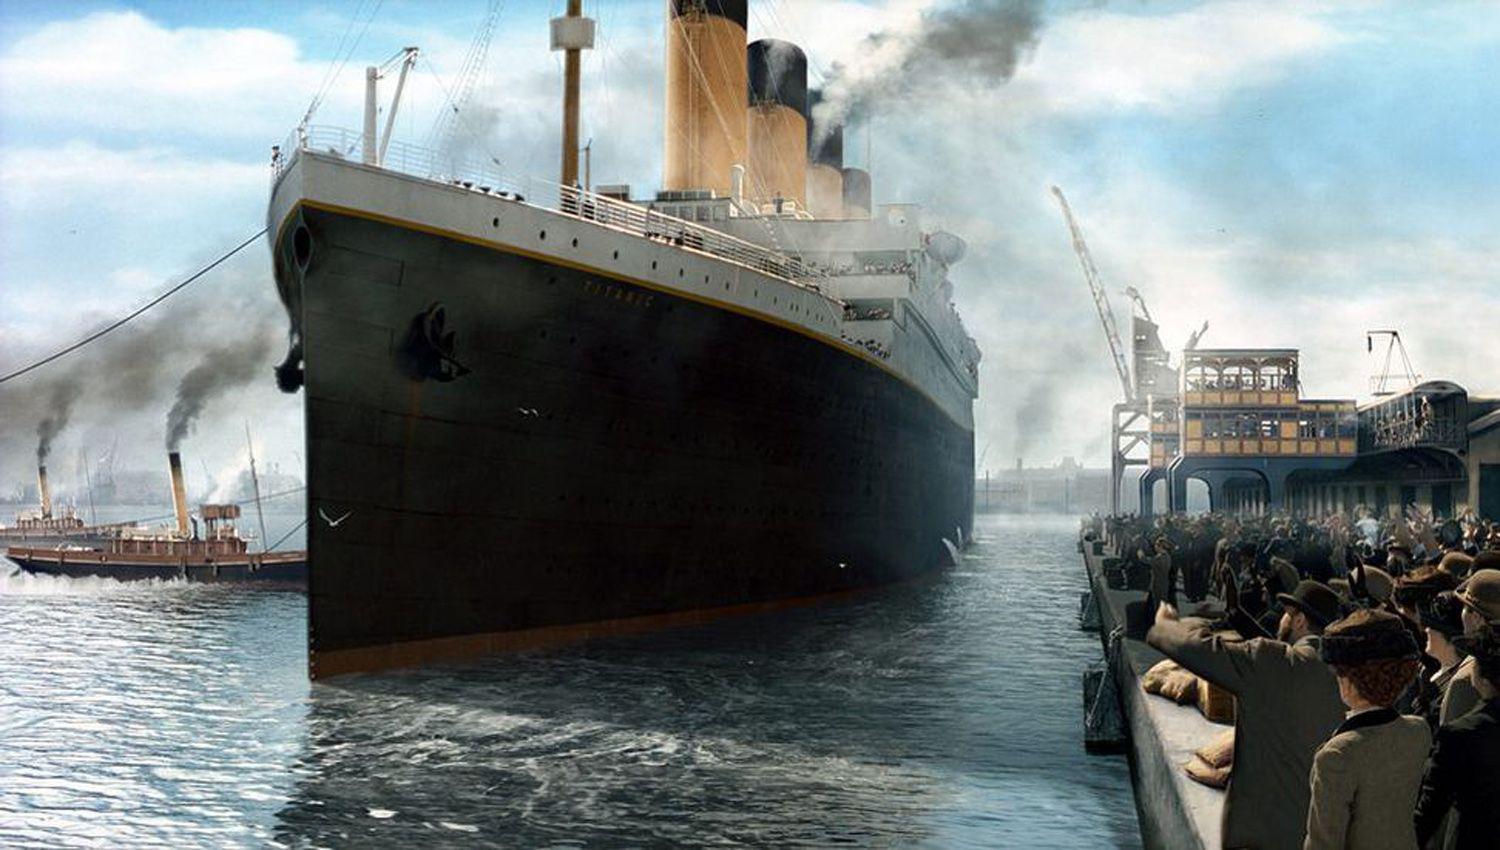 Otro insoacutelito emprendimiento de China- Decidieron construir una reacuteplica del Titanic